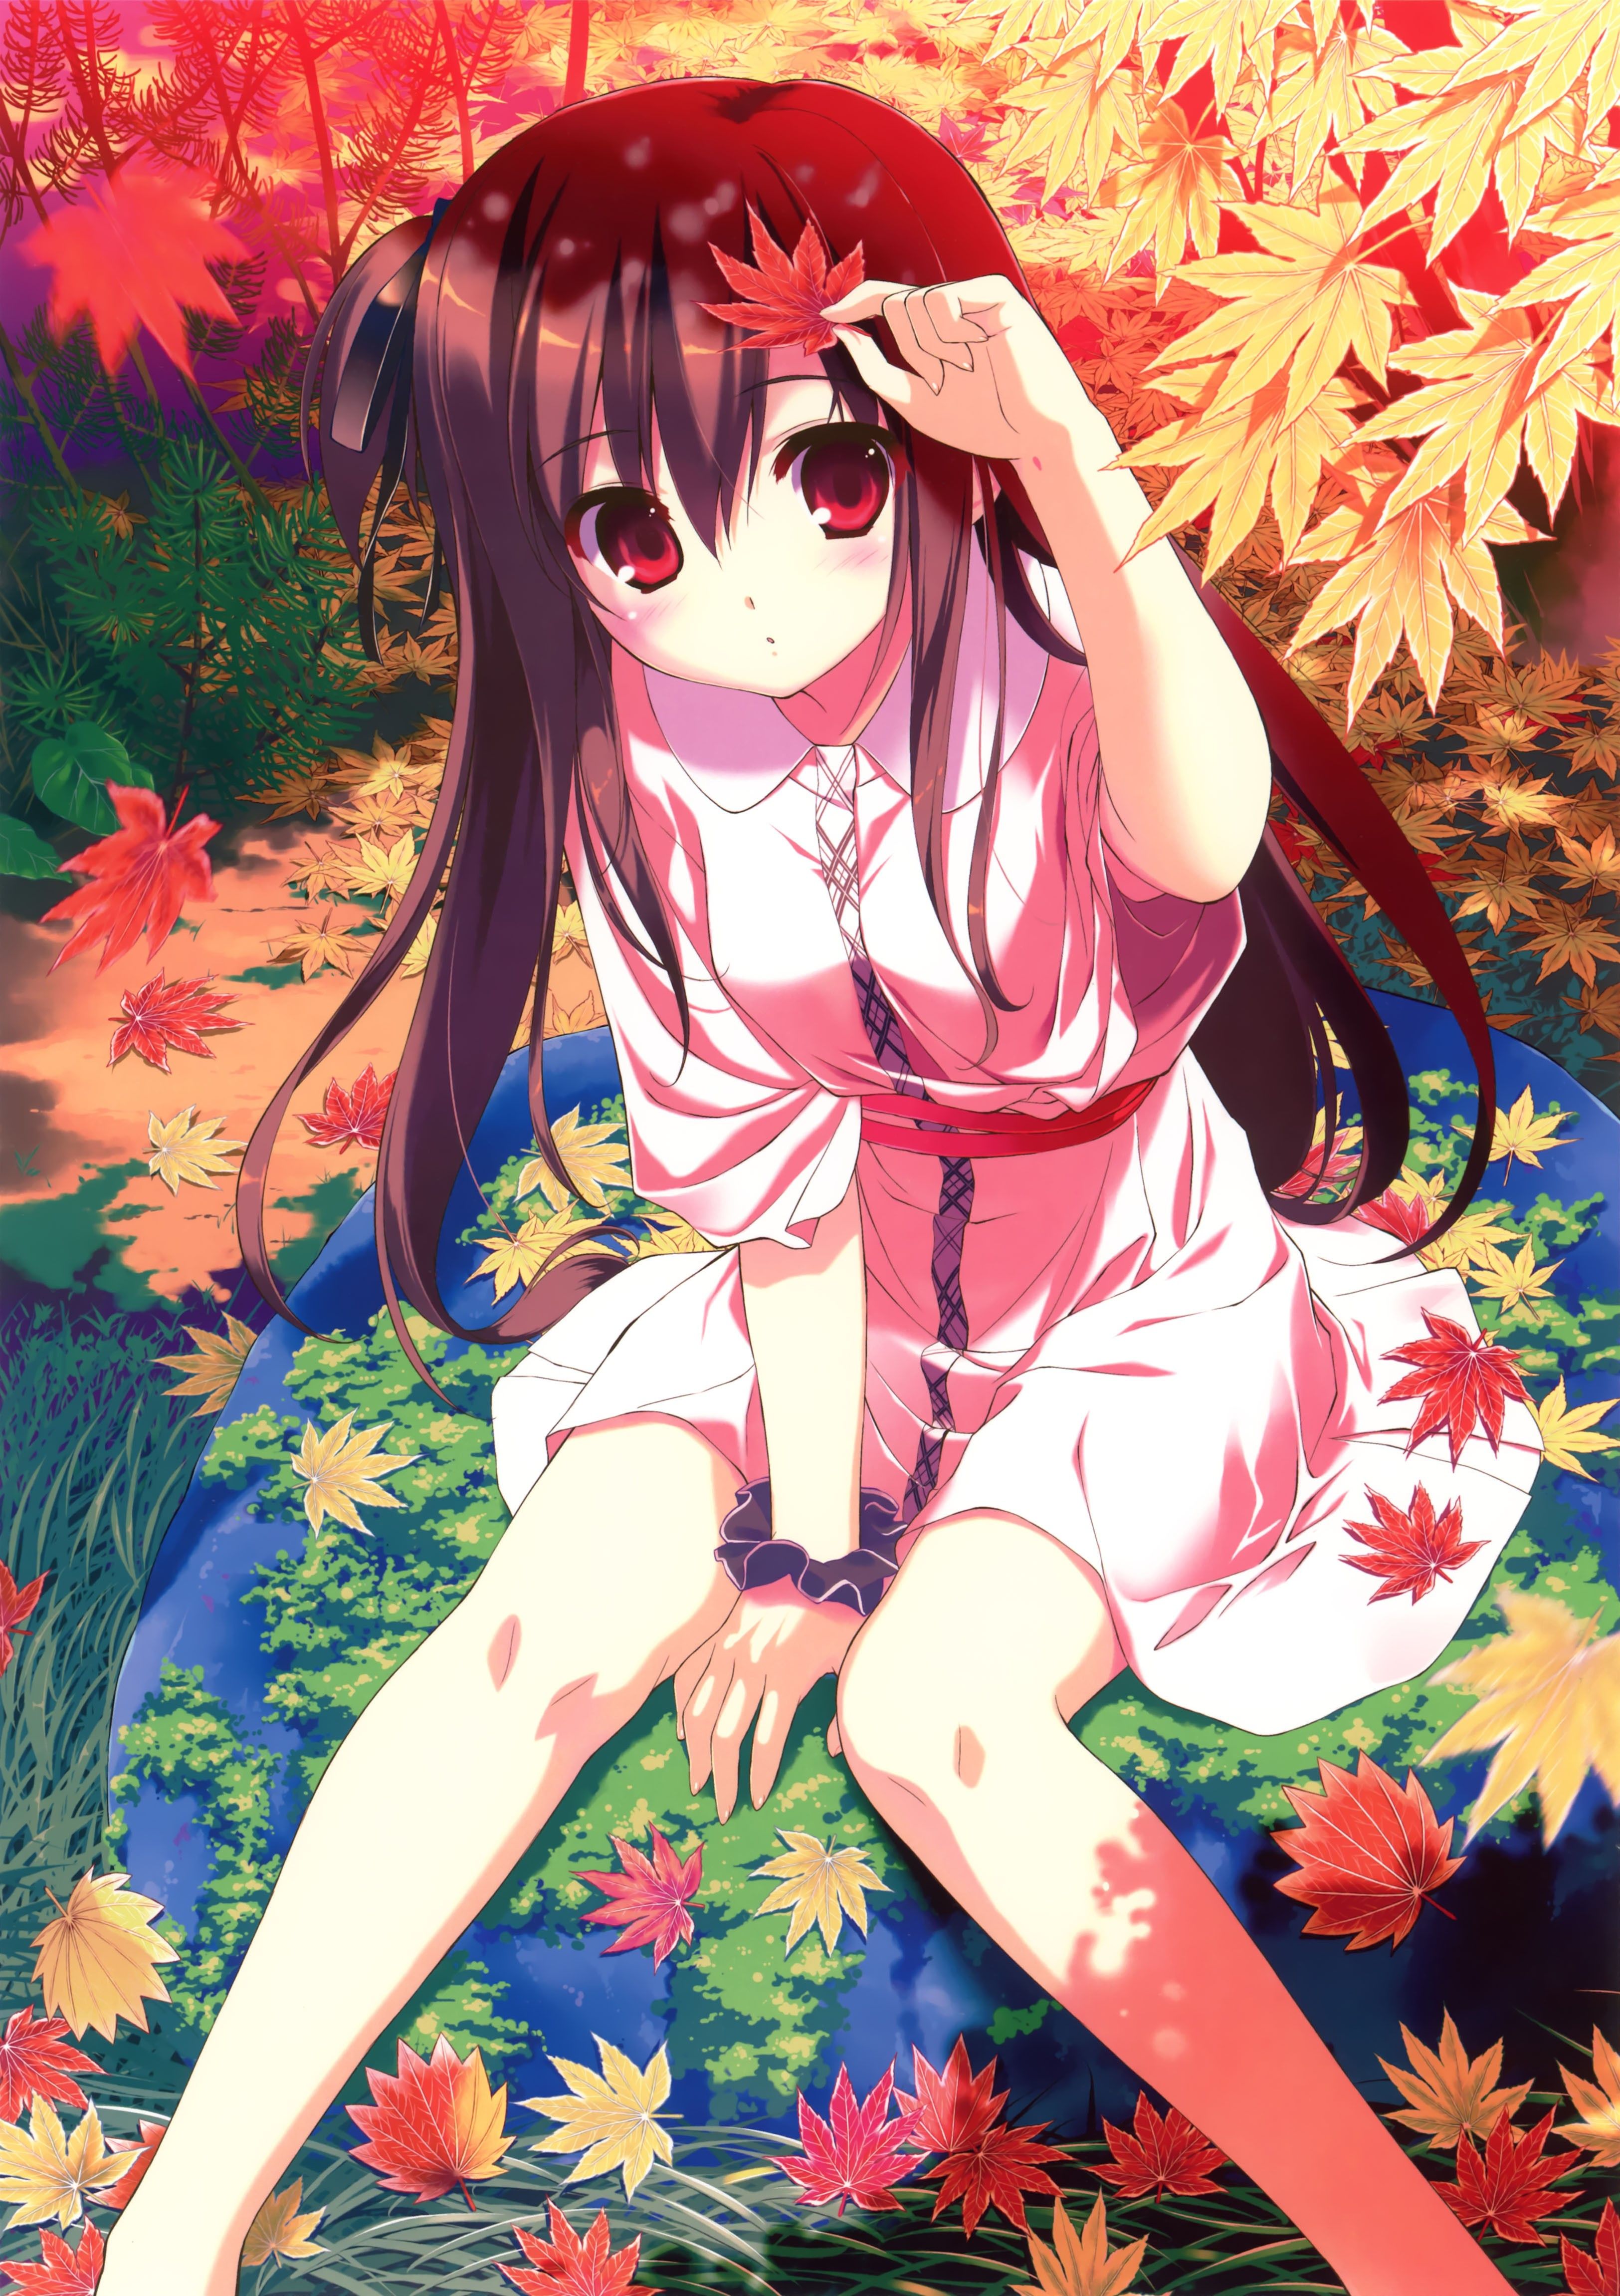 leaves, long hair, red eyes, yukata, anime girls, Autumn leaves, Fumio wallpaper